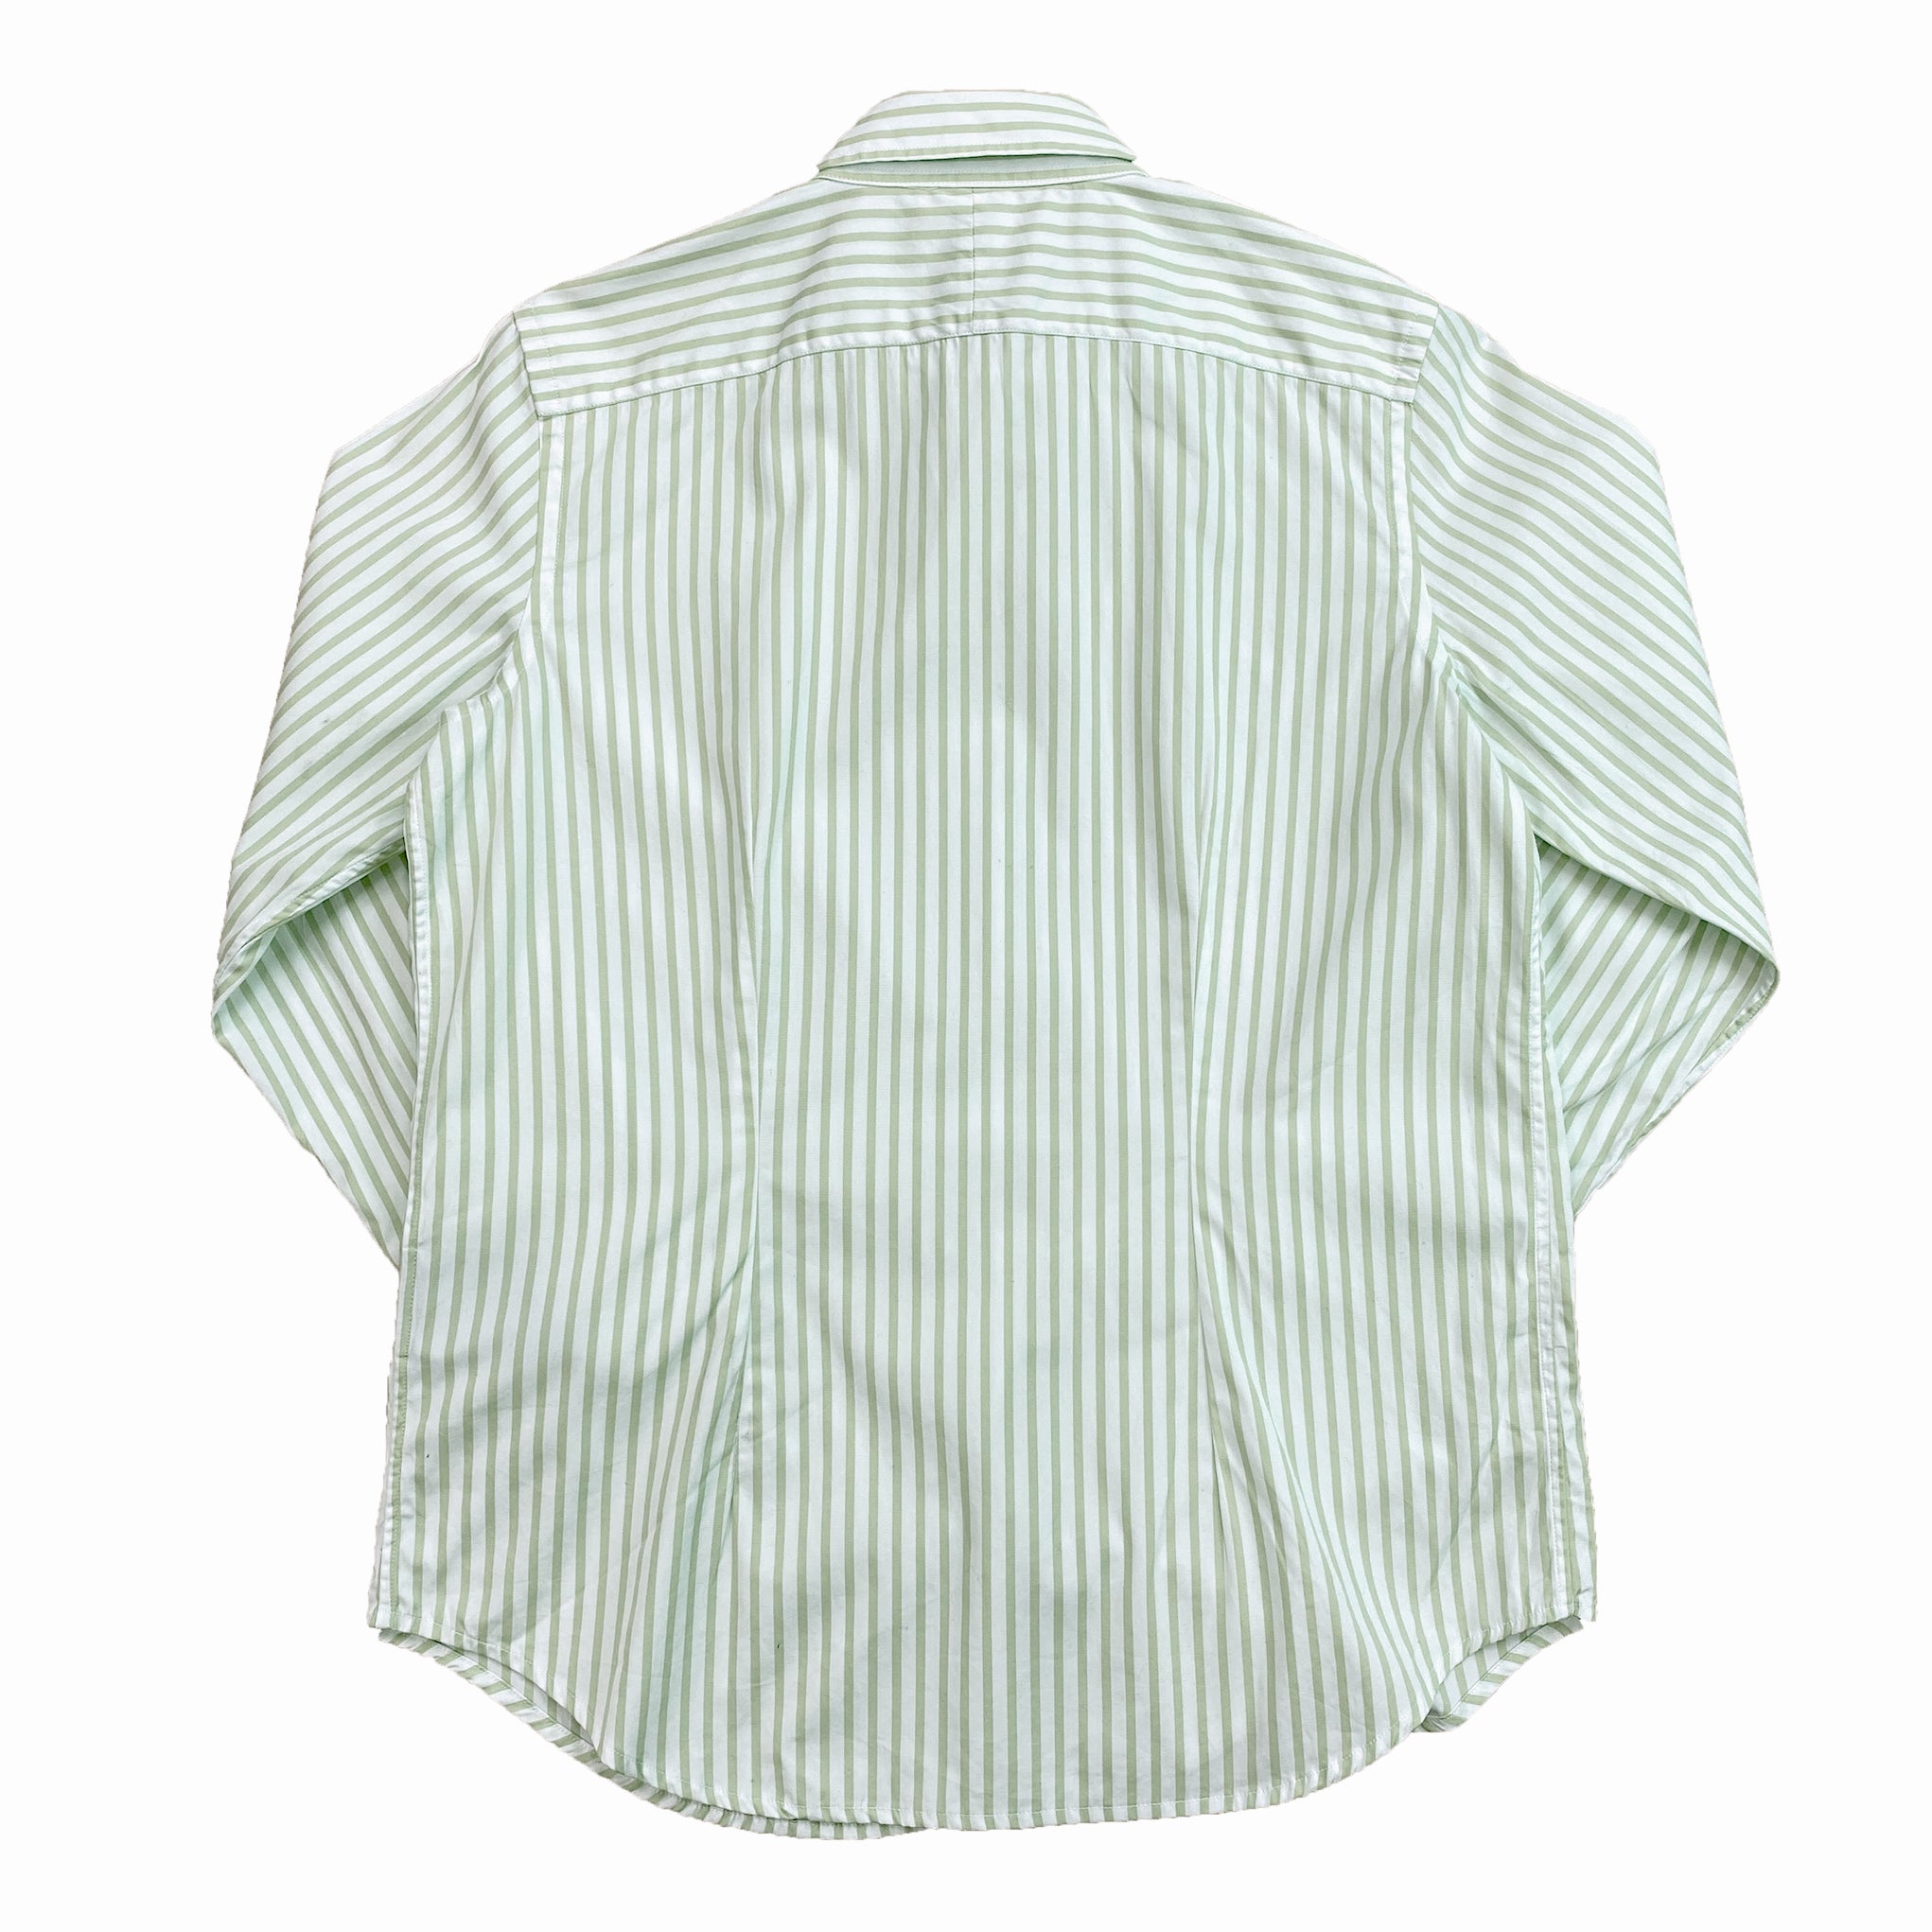 Lauren by Ralph Lauren Striped Green Button-Down Shirt